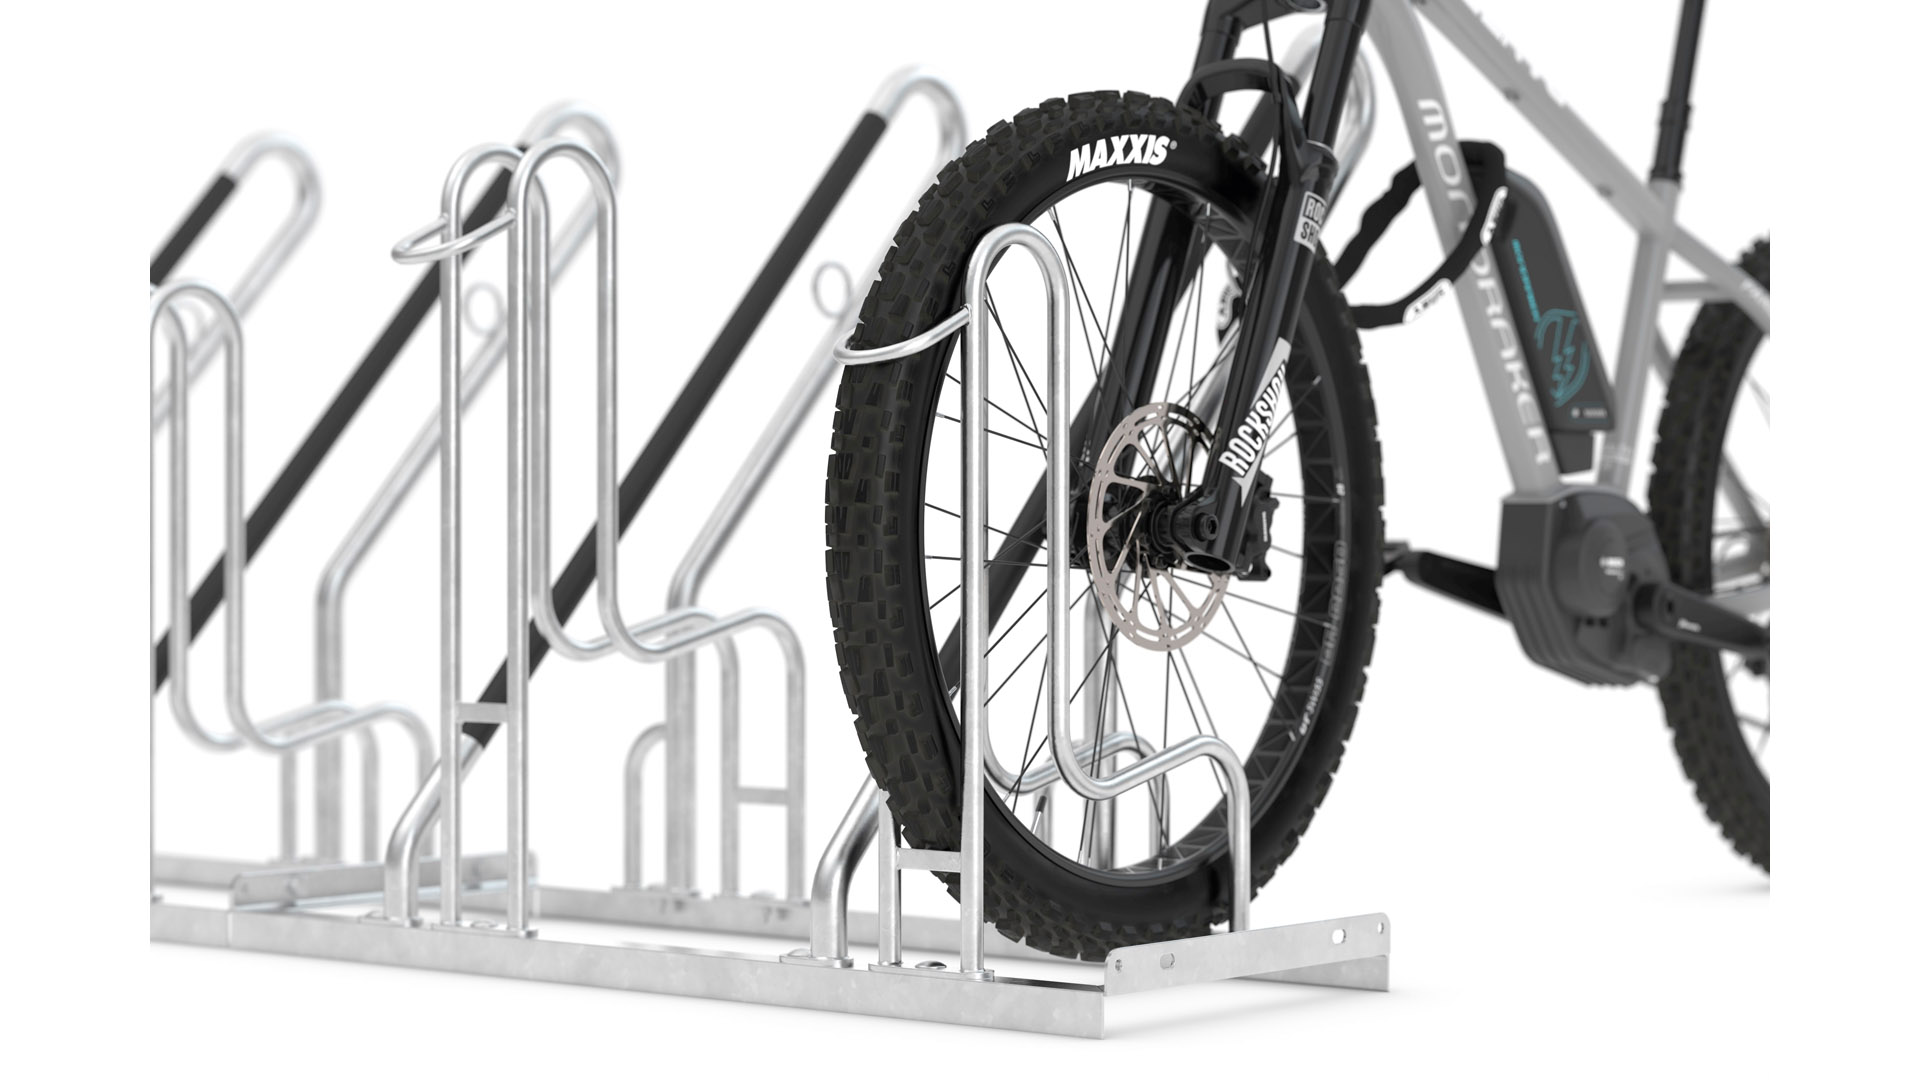 Fahrradständer - Anlehnparker, Stahl verzinkt, einseitige Radeinstellung, Radabstand 500 mm, Hoch-/Tiefstellung, 4er Stand, Länge 2000 mm